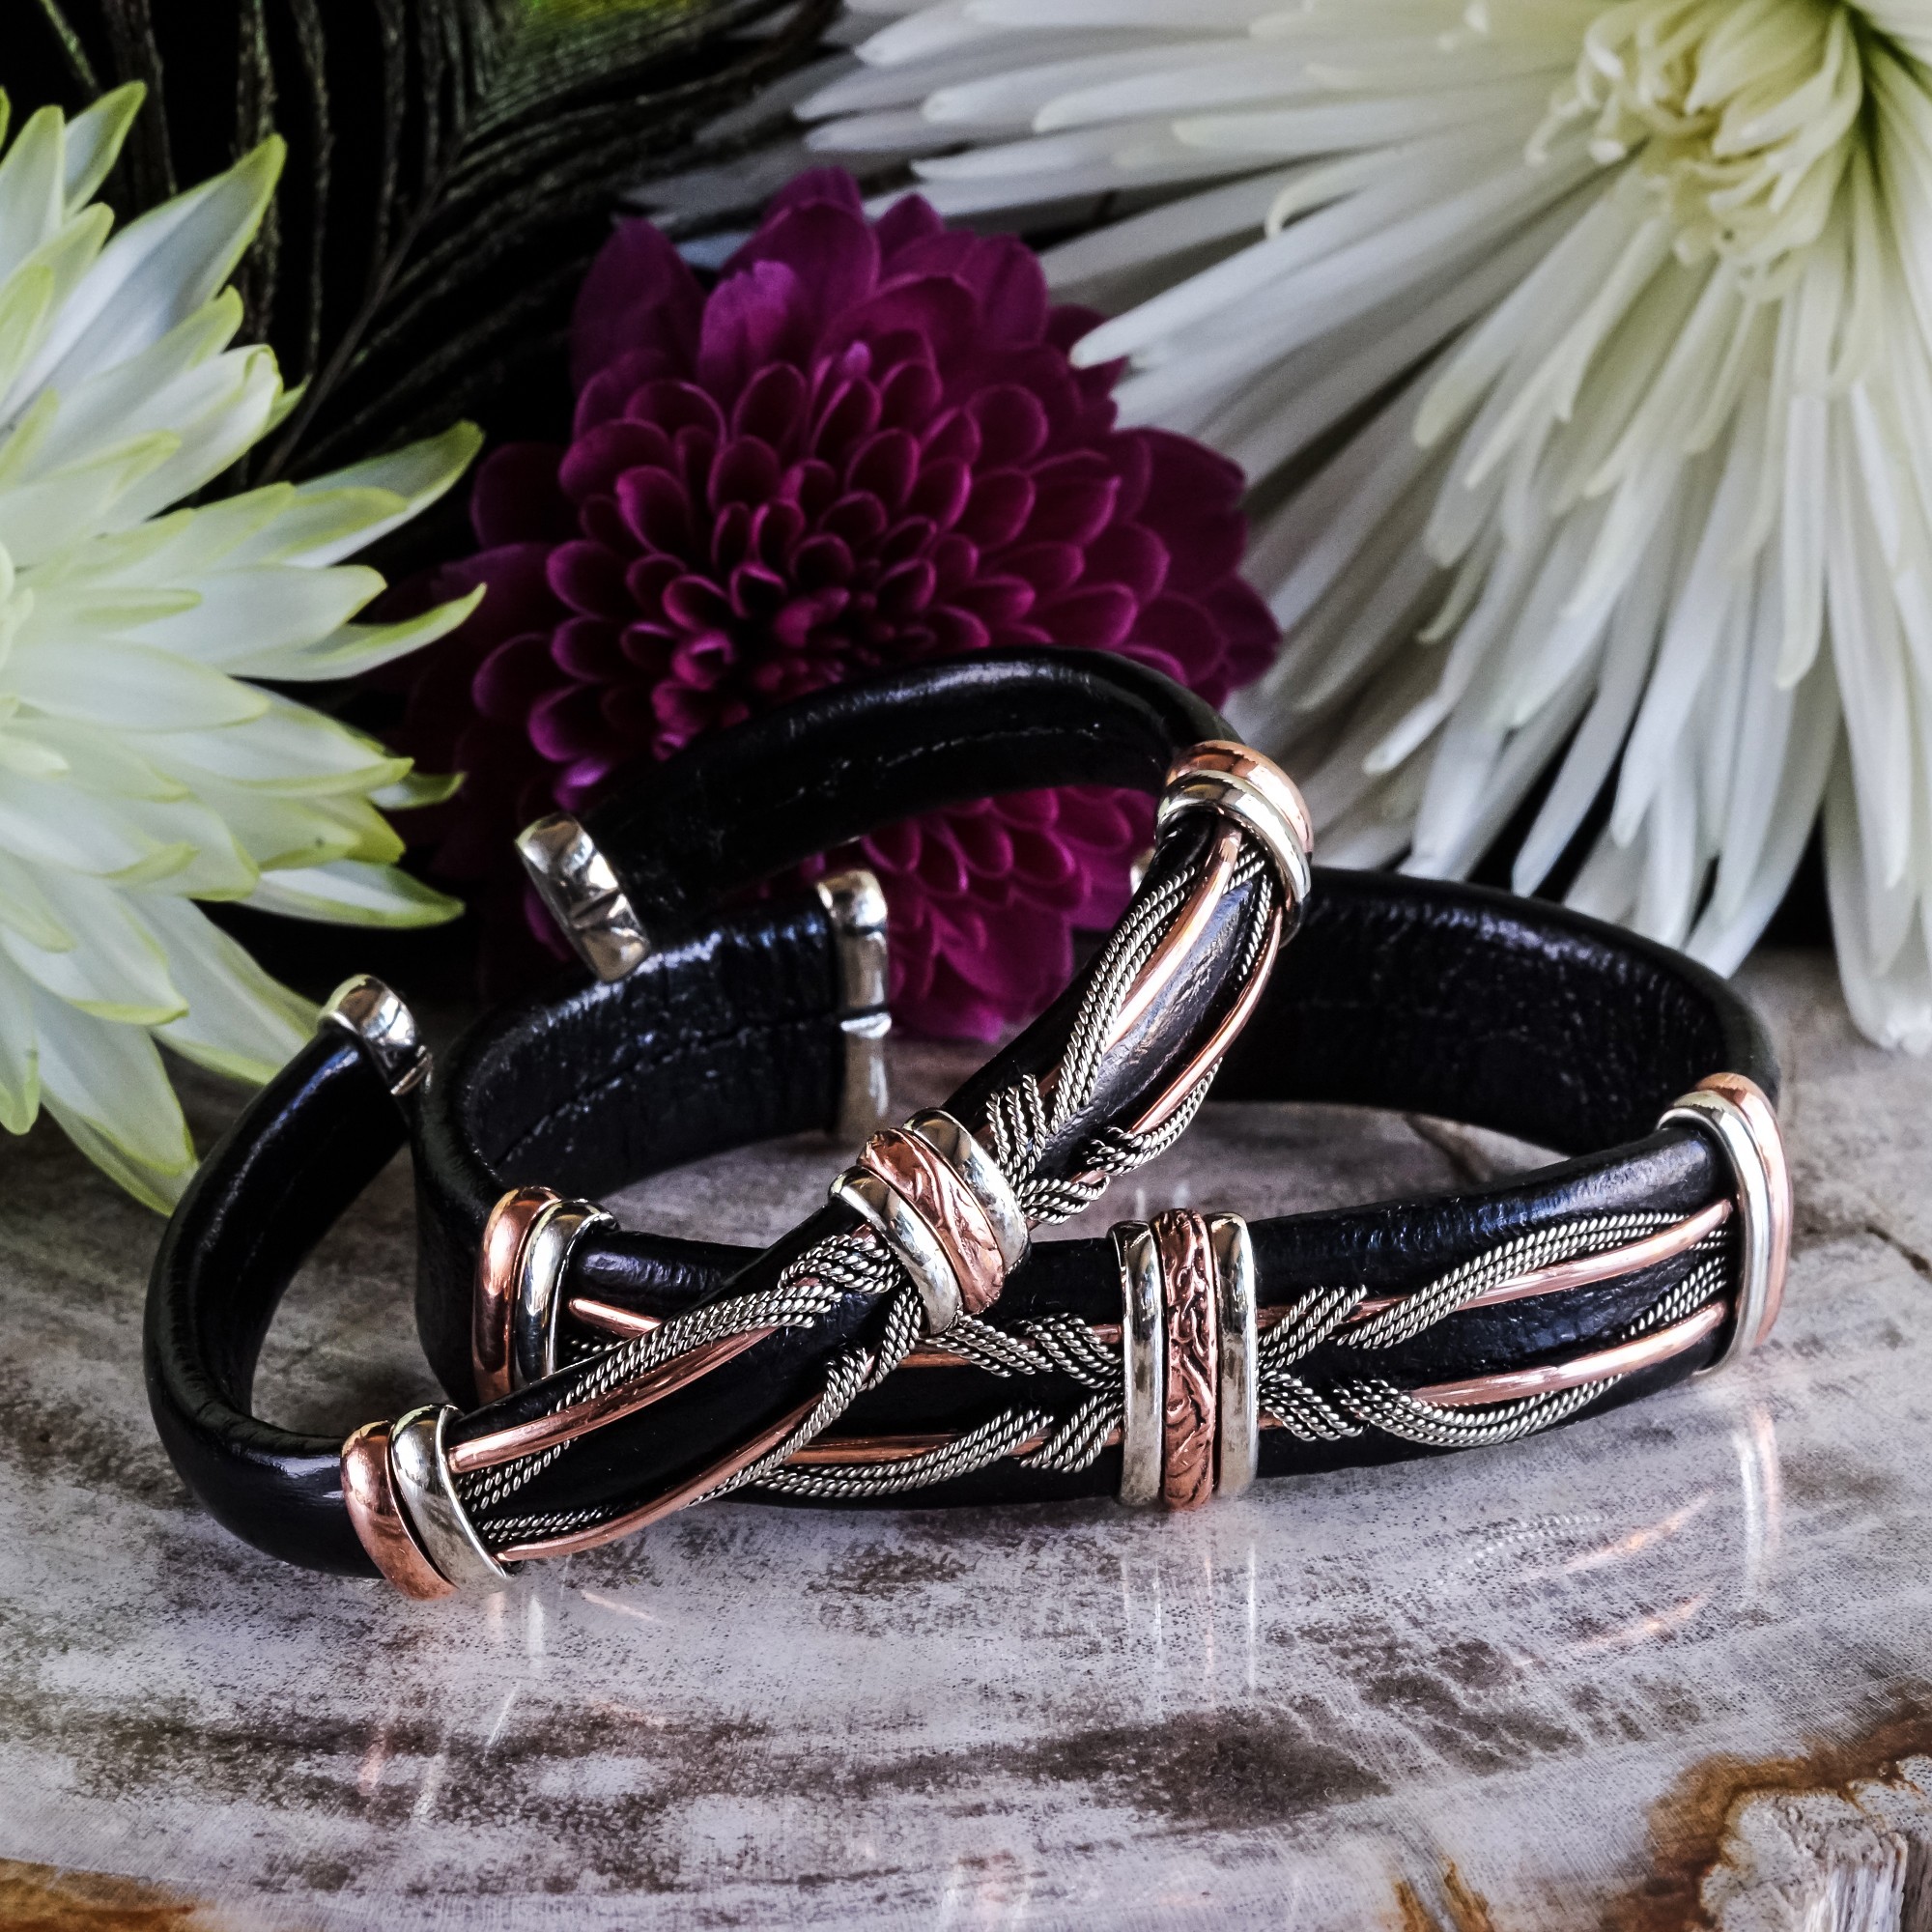 Copper healing bracelets